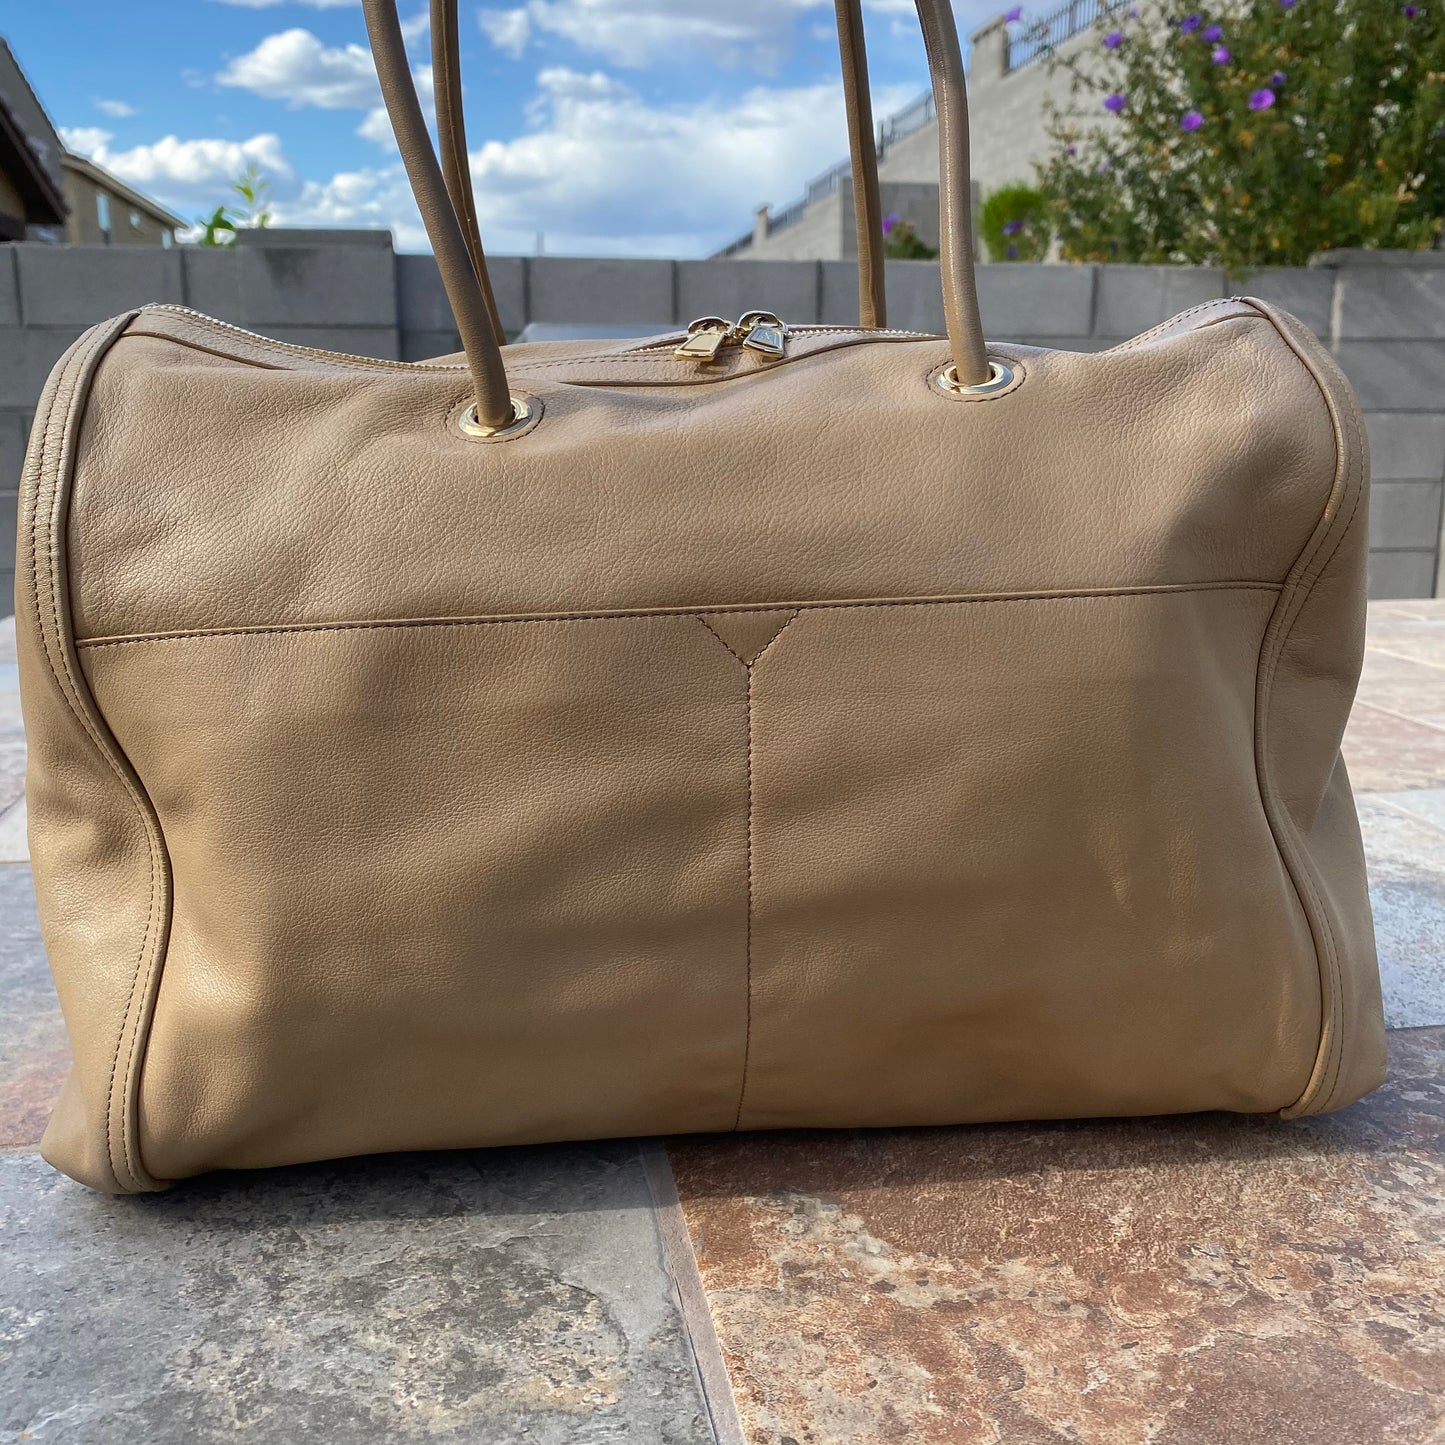 Yves Saint Laurent Sac Chyc Boston Bag